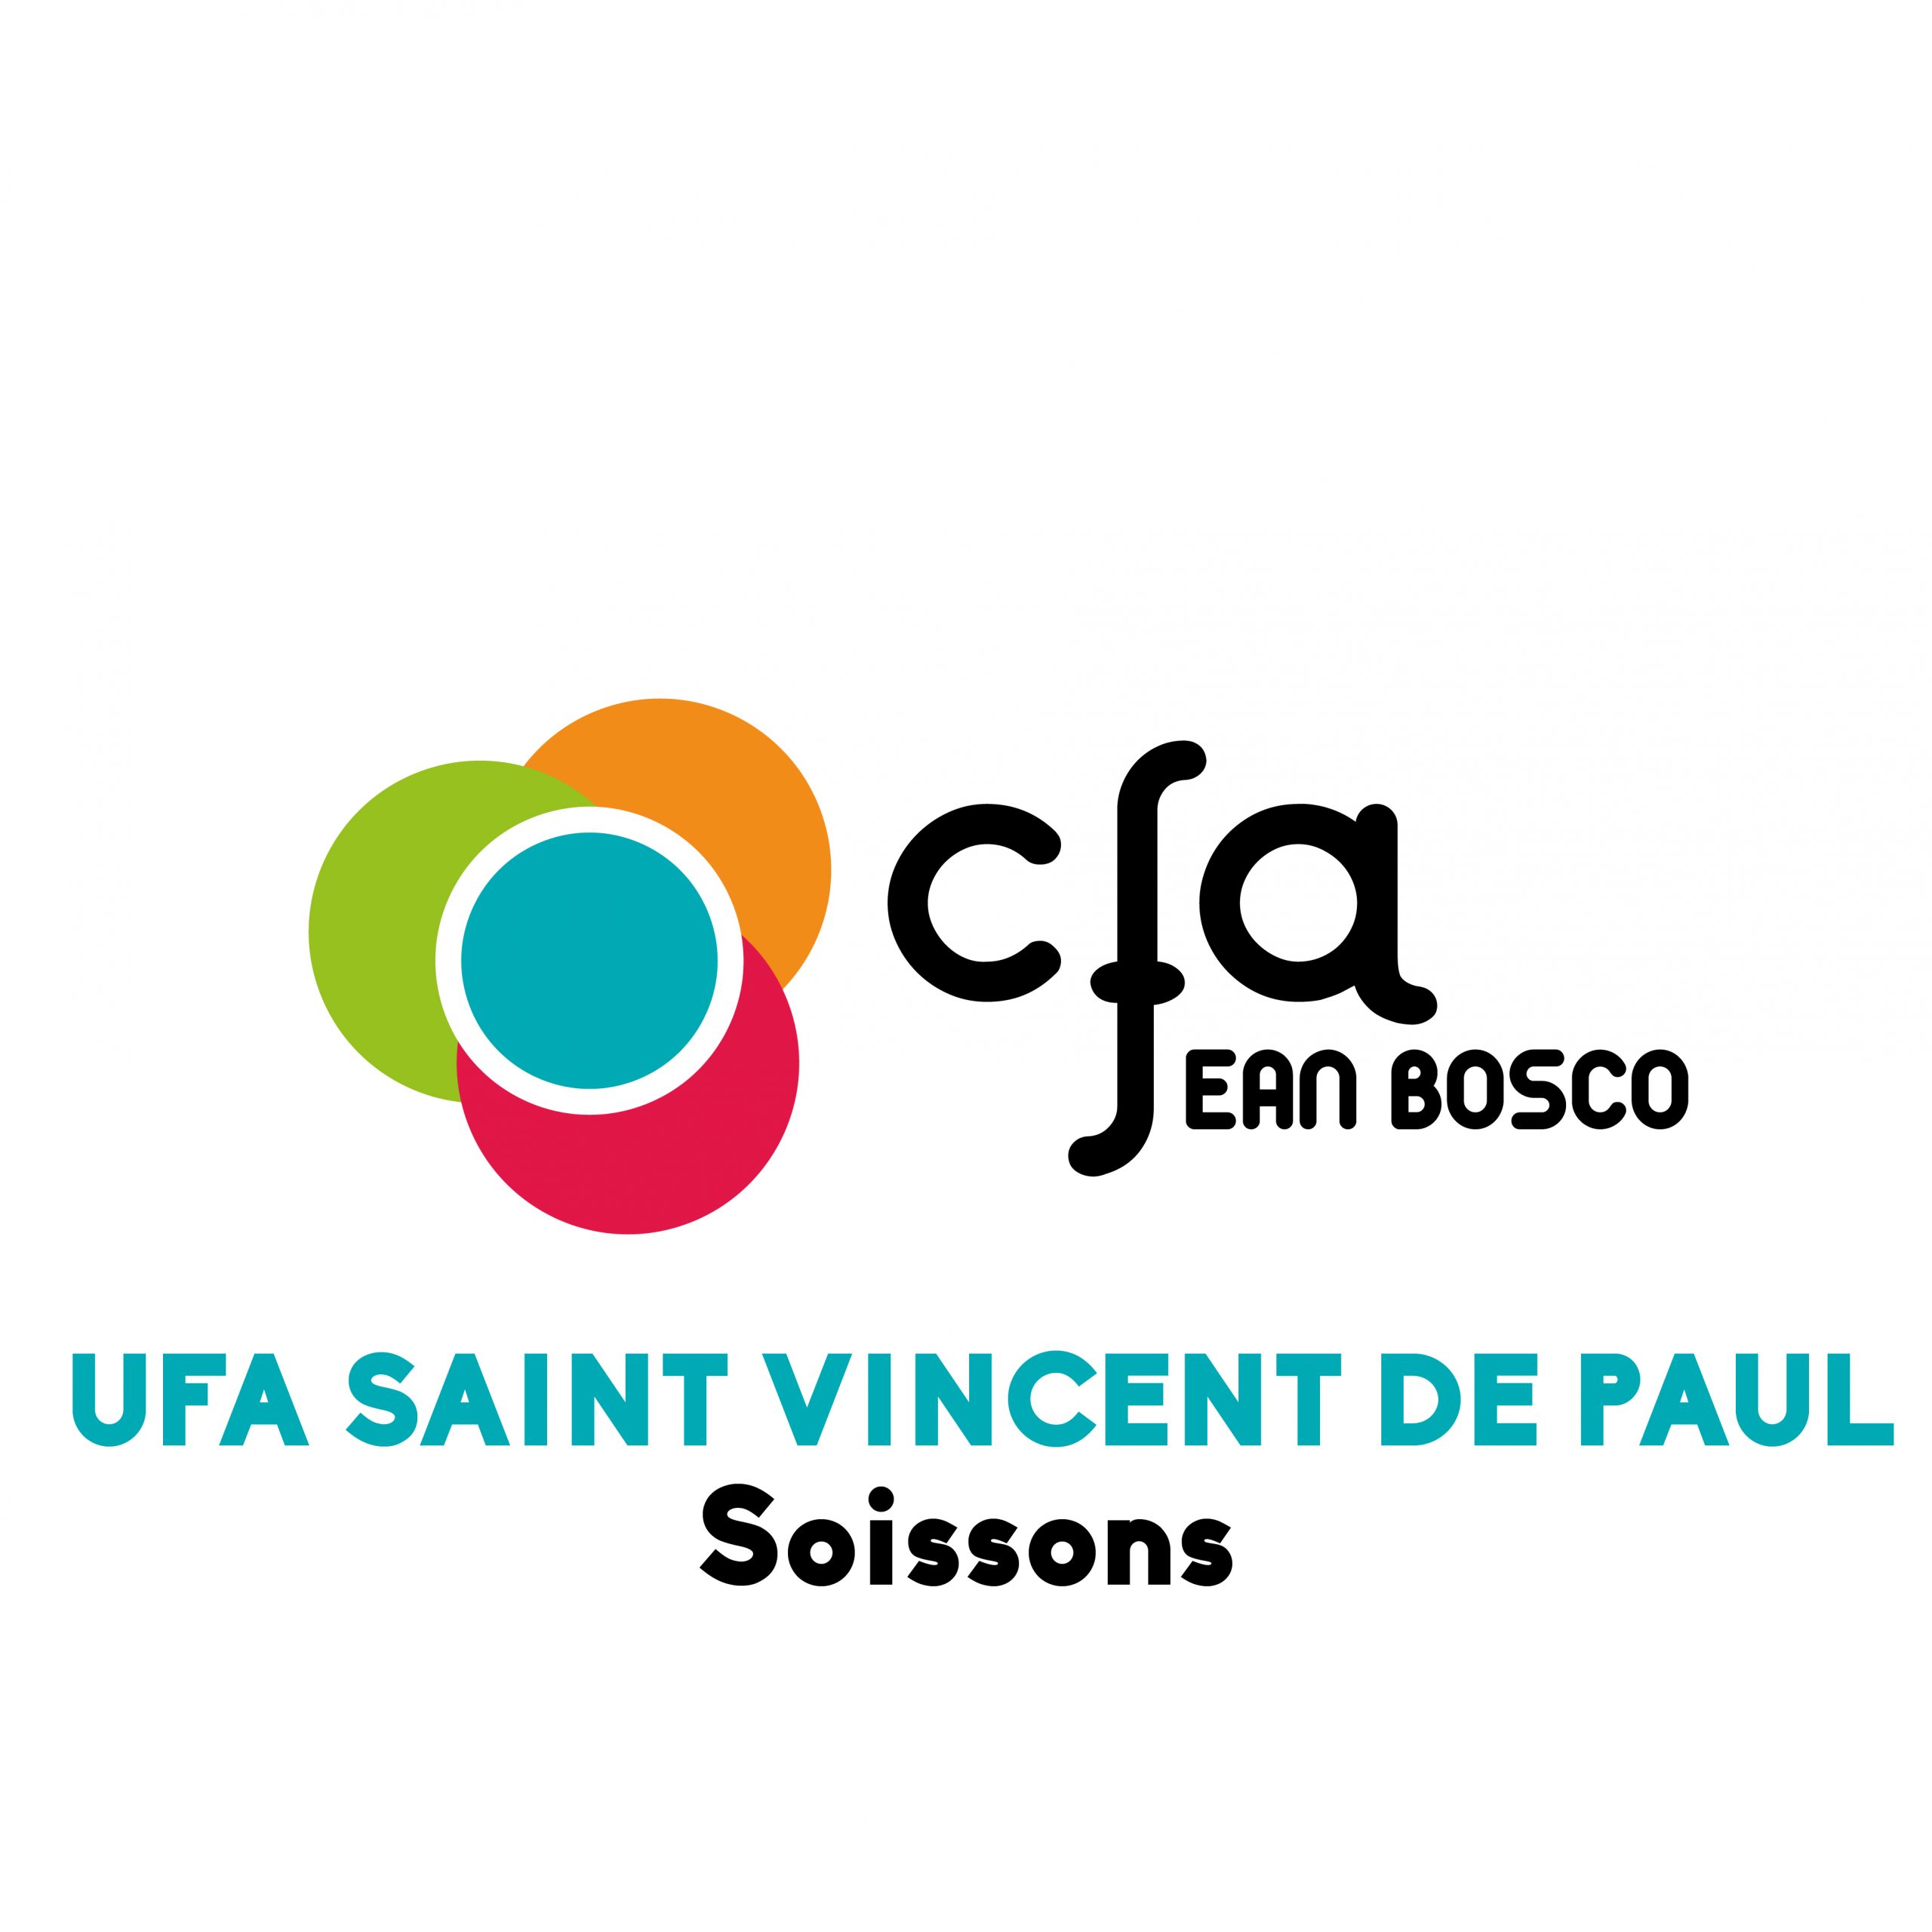 UFA SAINT VINCENT DE PAUL Soissons